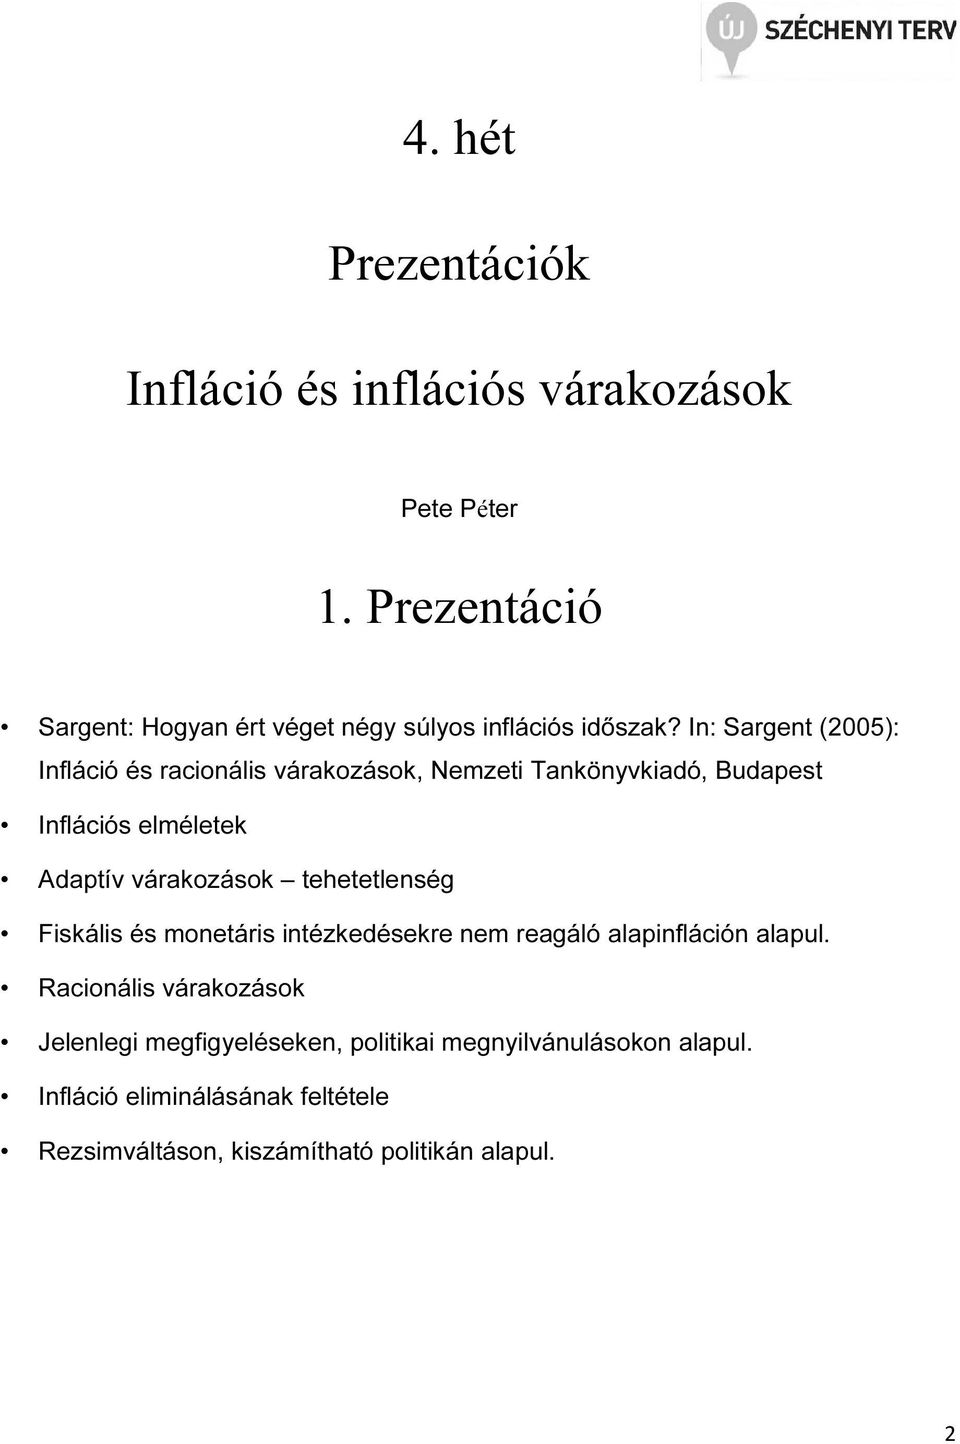 In: Sargent (2005): Infláció és racionális várakozások, Nemzeti Tankönyvkiadó, Budapest Inflációs elméletek Adaptív várakozások